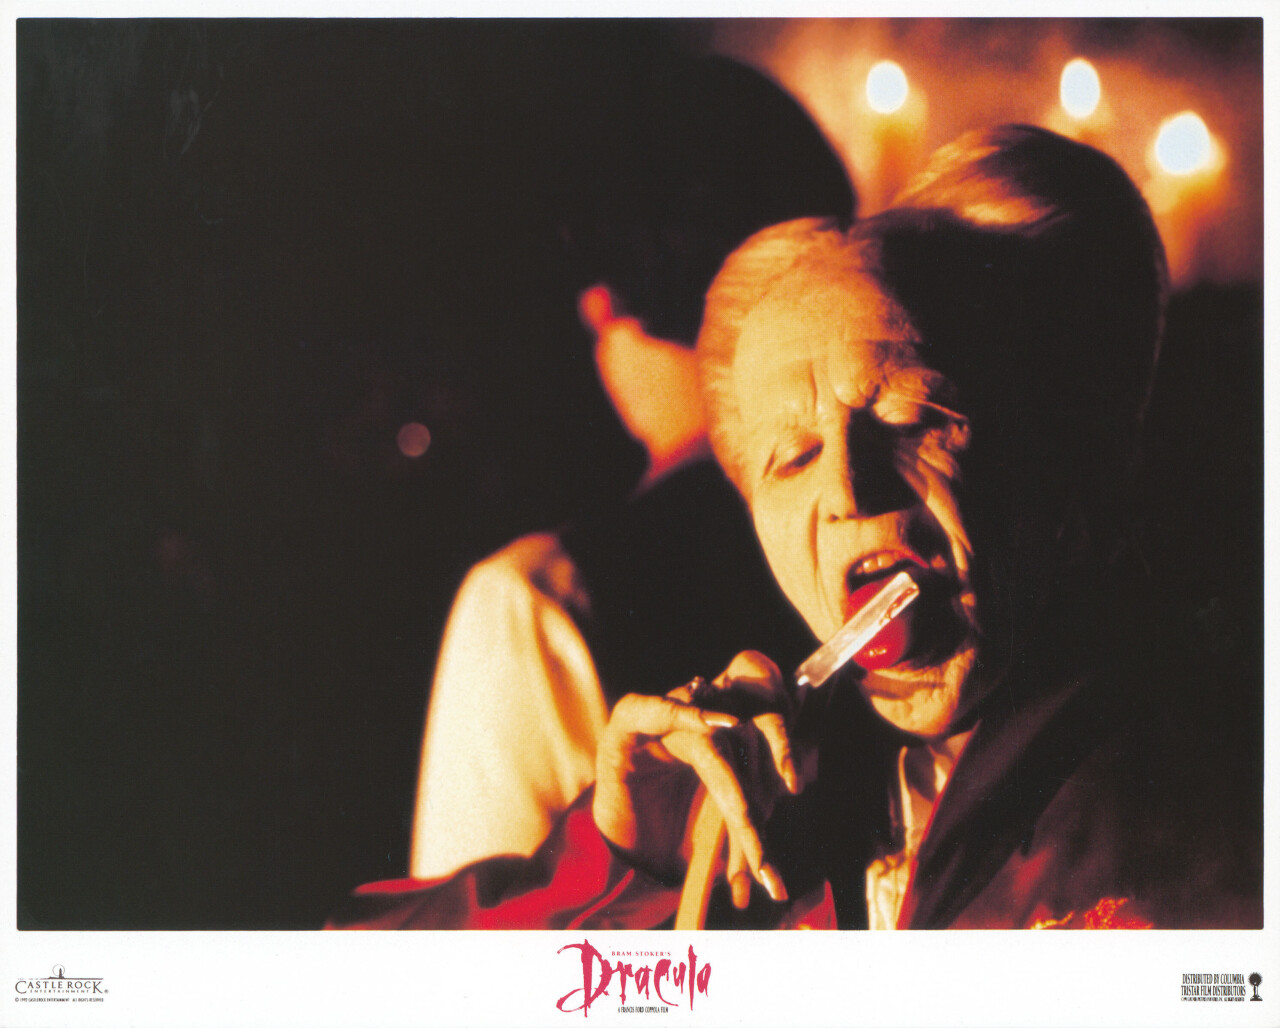 Дракула (Dracula, 1992), режиссёр Фрэнсис Форд Коппола, американский постер к фильму (ужасы, 1992 год) (9)